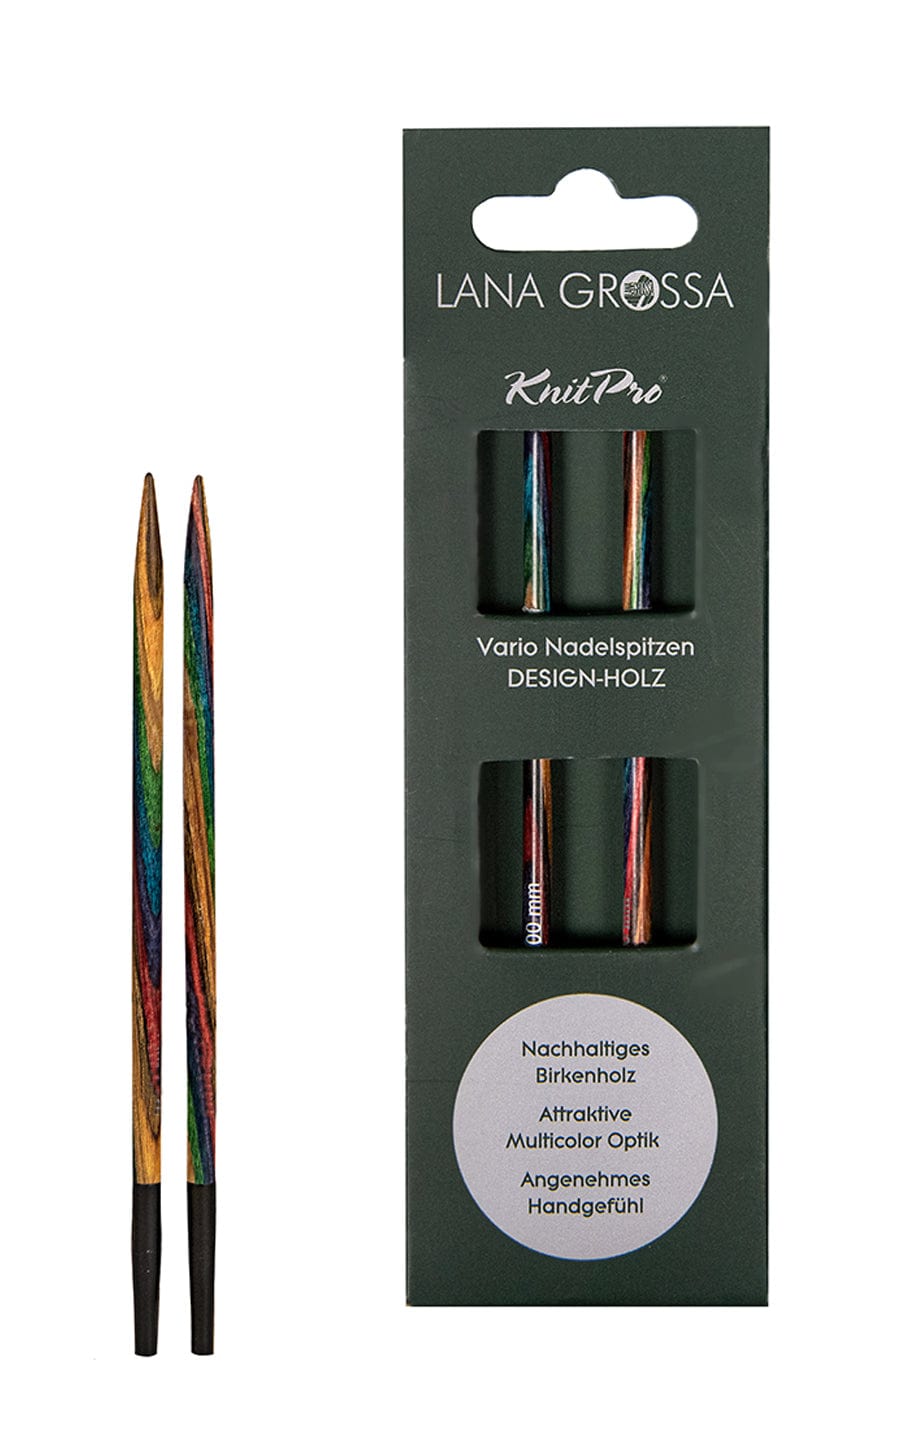 10,0 mm Nadelspitze Vario aus Holz - neue Verpackung von LANA GROSSA jetzt online kaufen bei OONIQUE